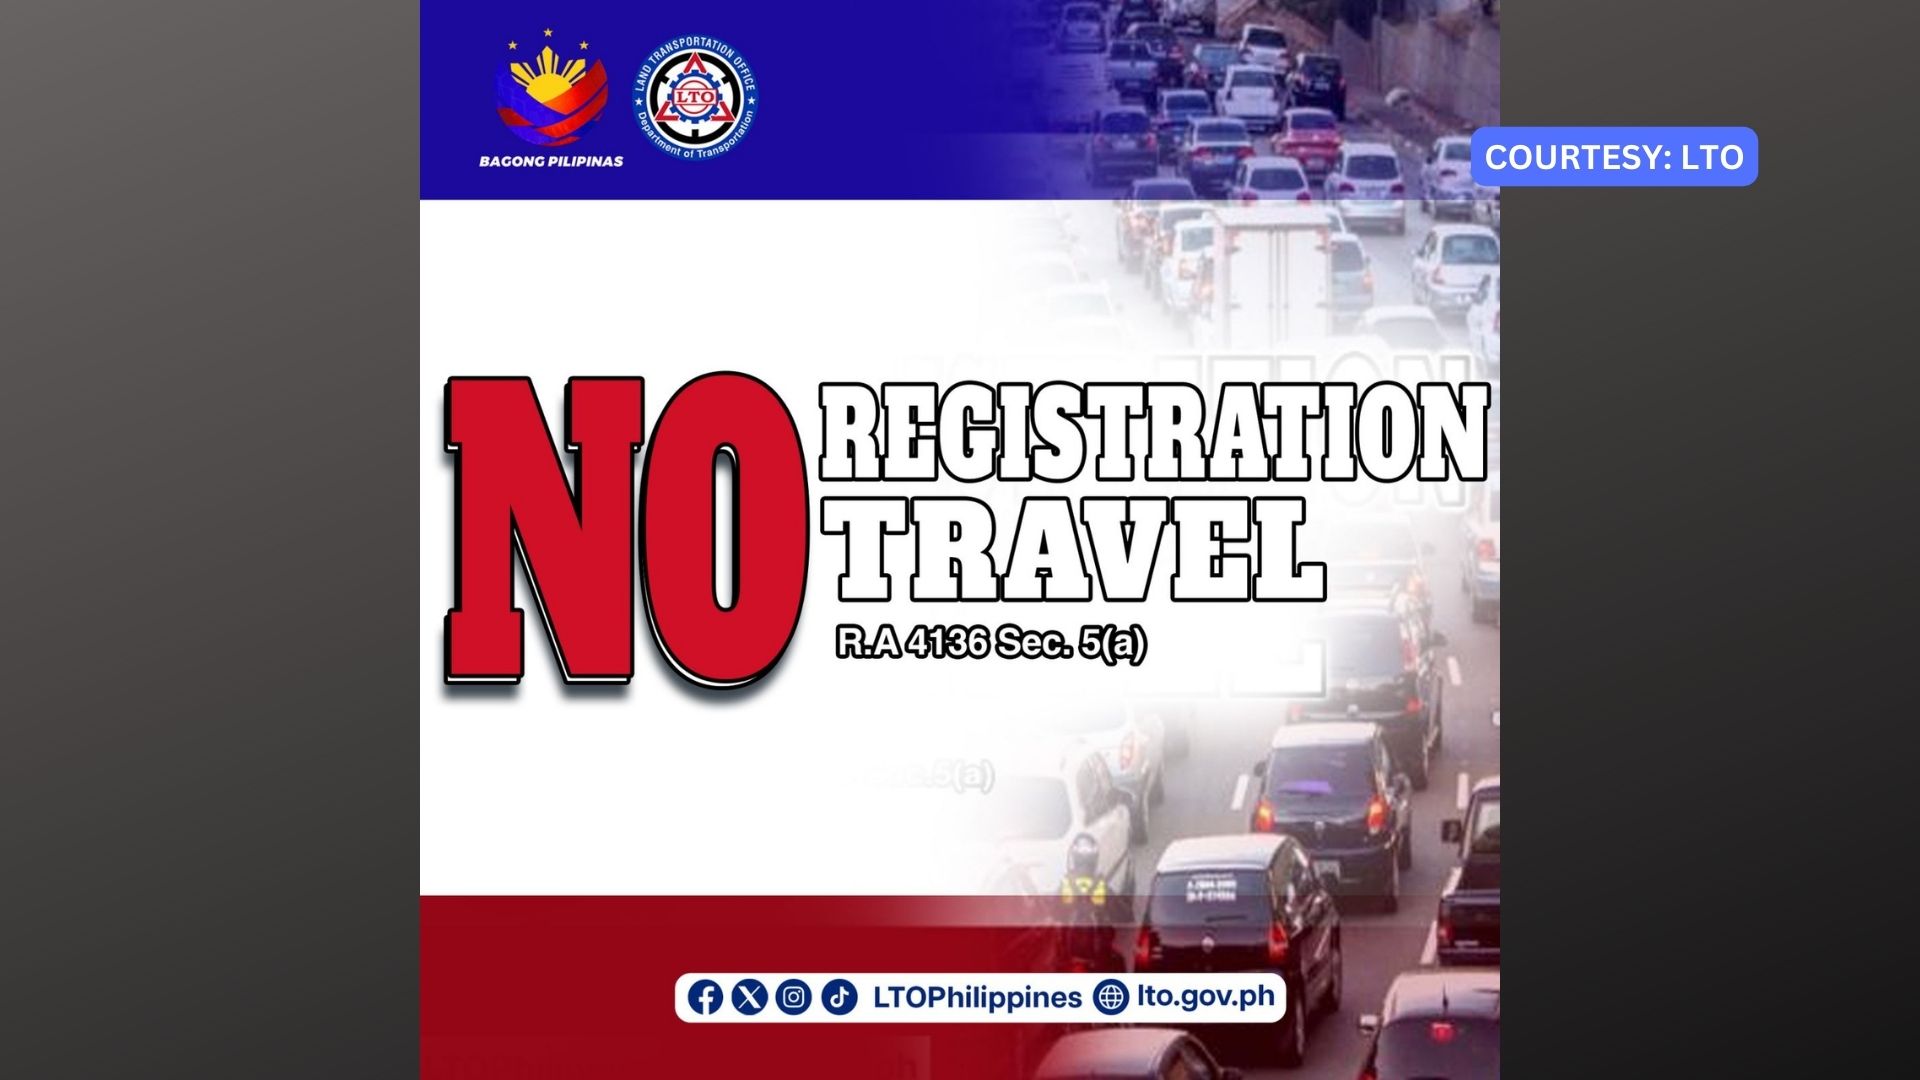 41 motorsiklo na-impoud kasunod ng mahigpit na pagpapatupad ng “no registration, no travel” policy ng LTO